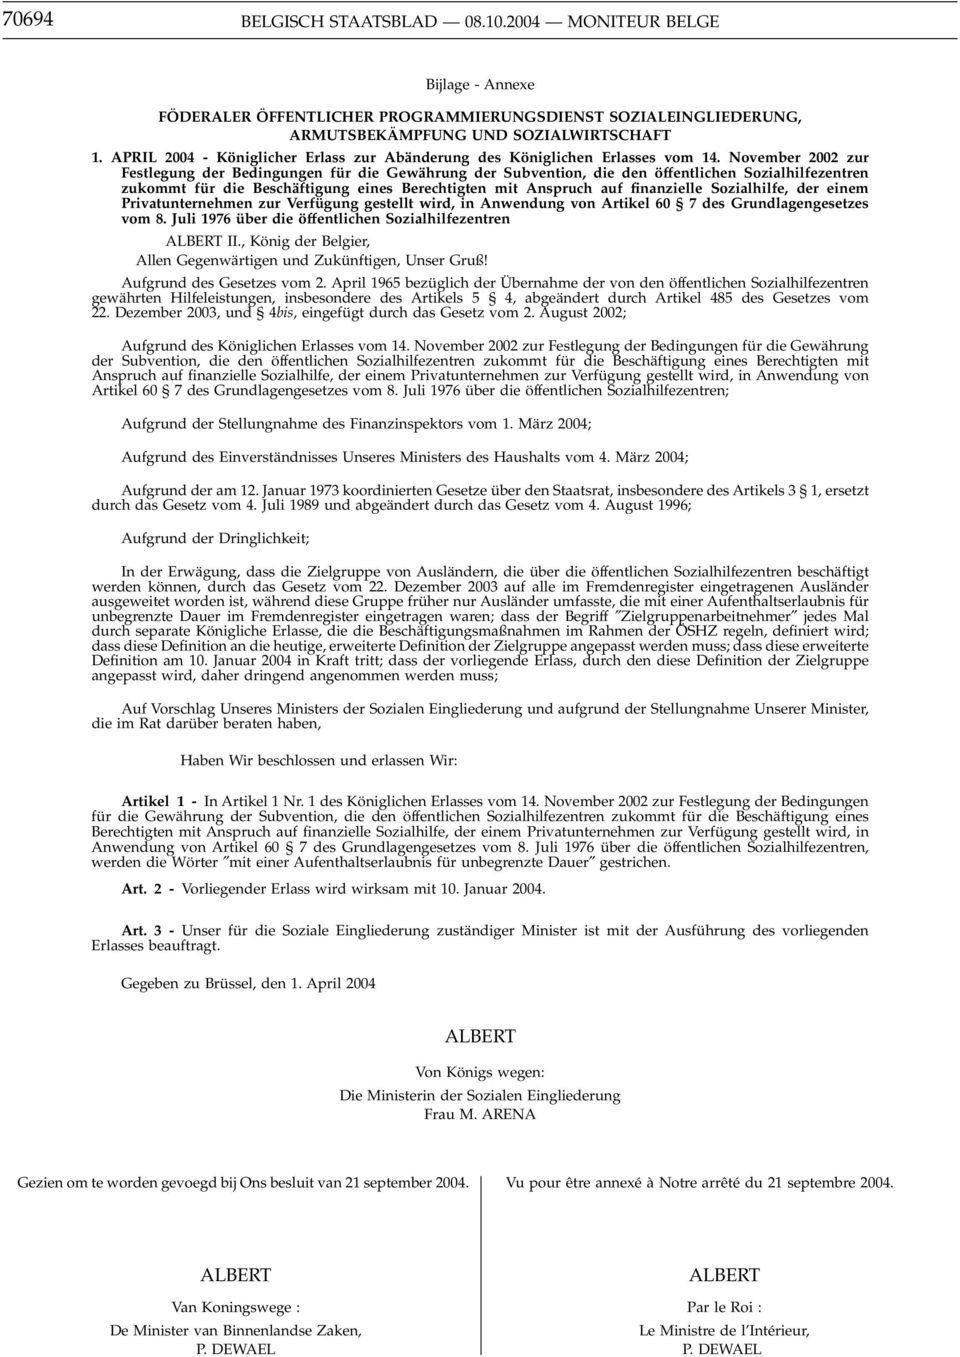 November 2002 zur Festlegung der Bedingungen für die Gewährung der Subvention, die den öffentlichen Sozialhilfezentren zukommt für die Beschäftigung eines Berechtigten mit Anspruch auf finanzielle